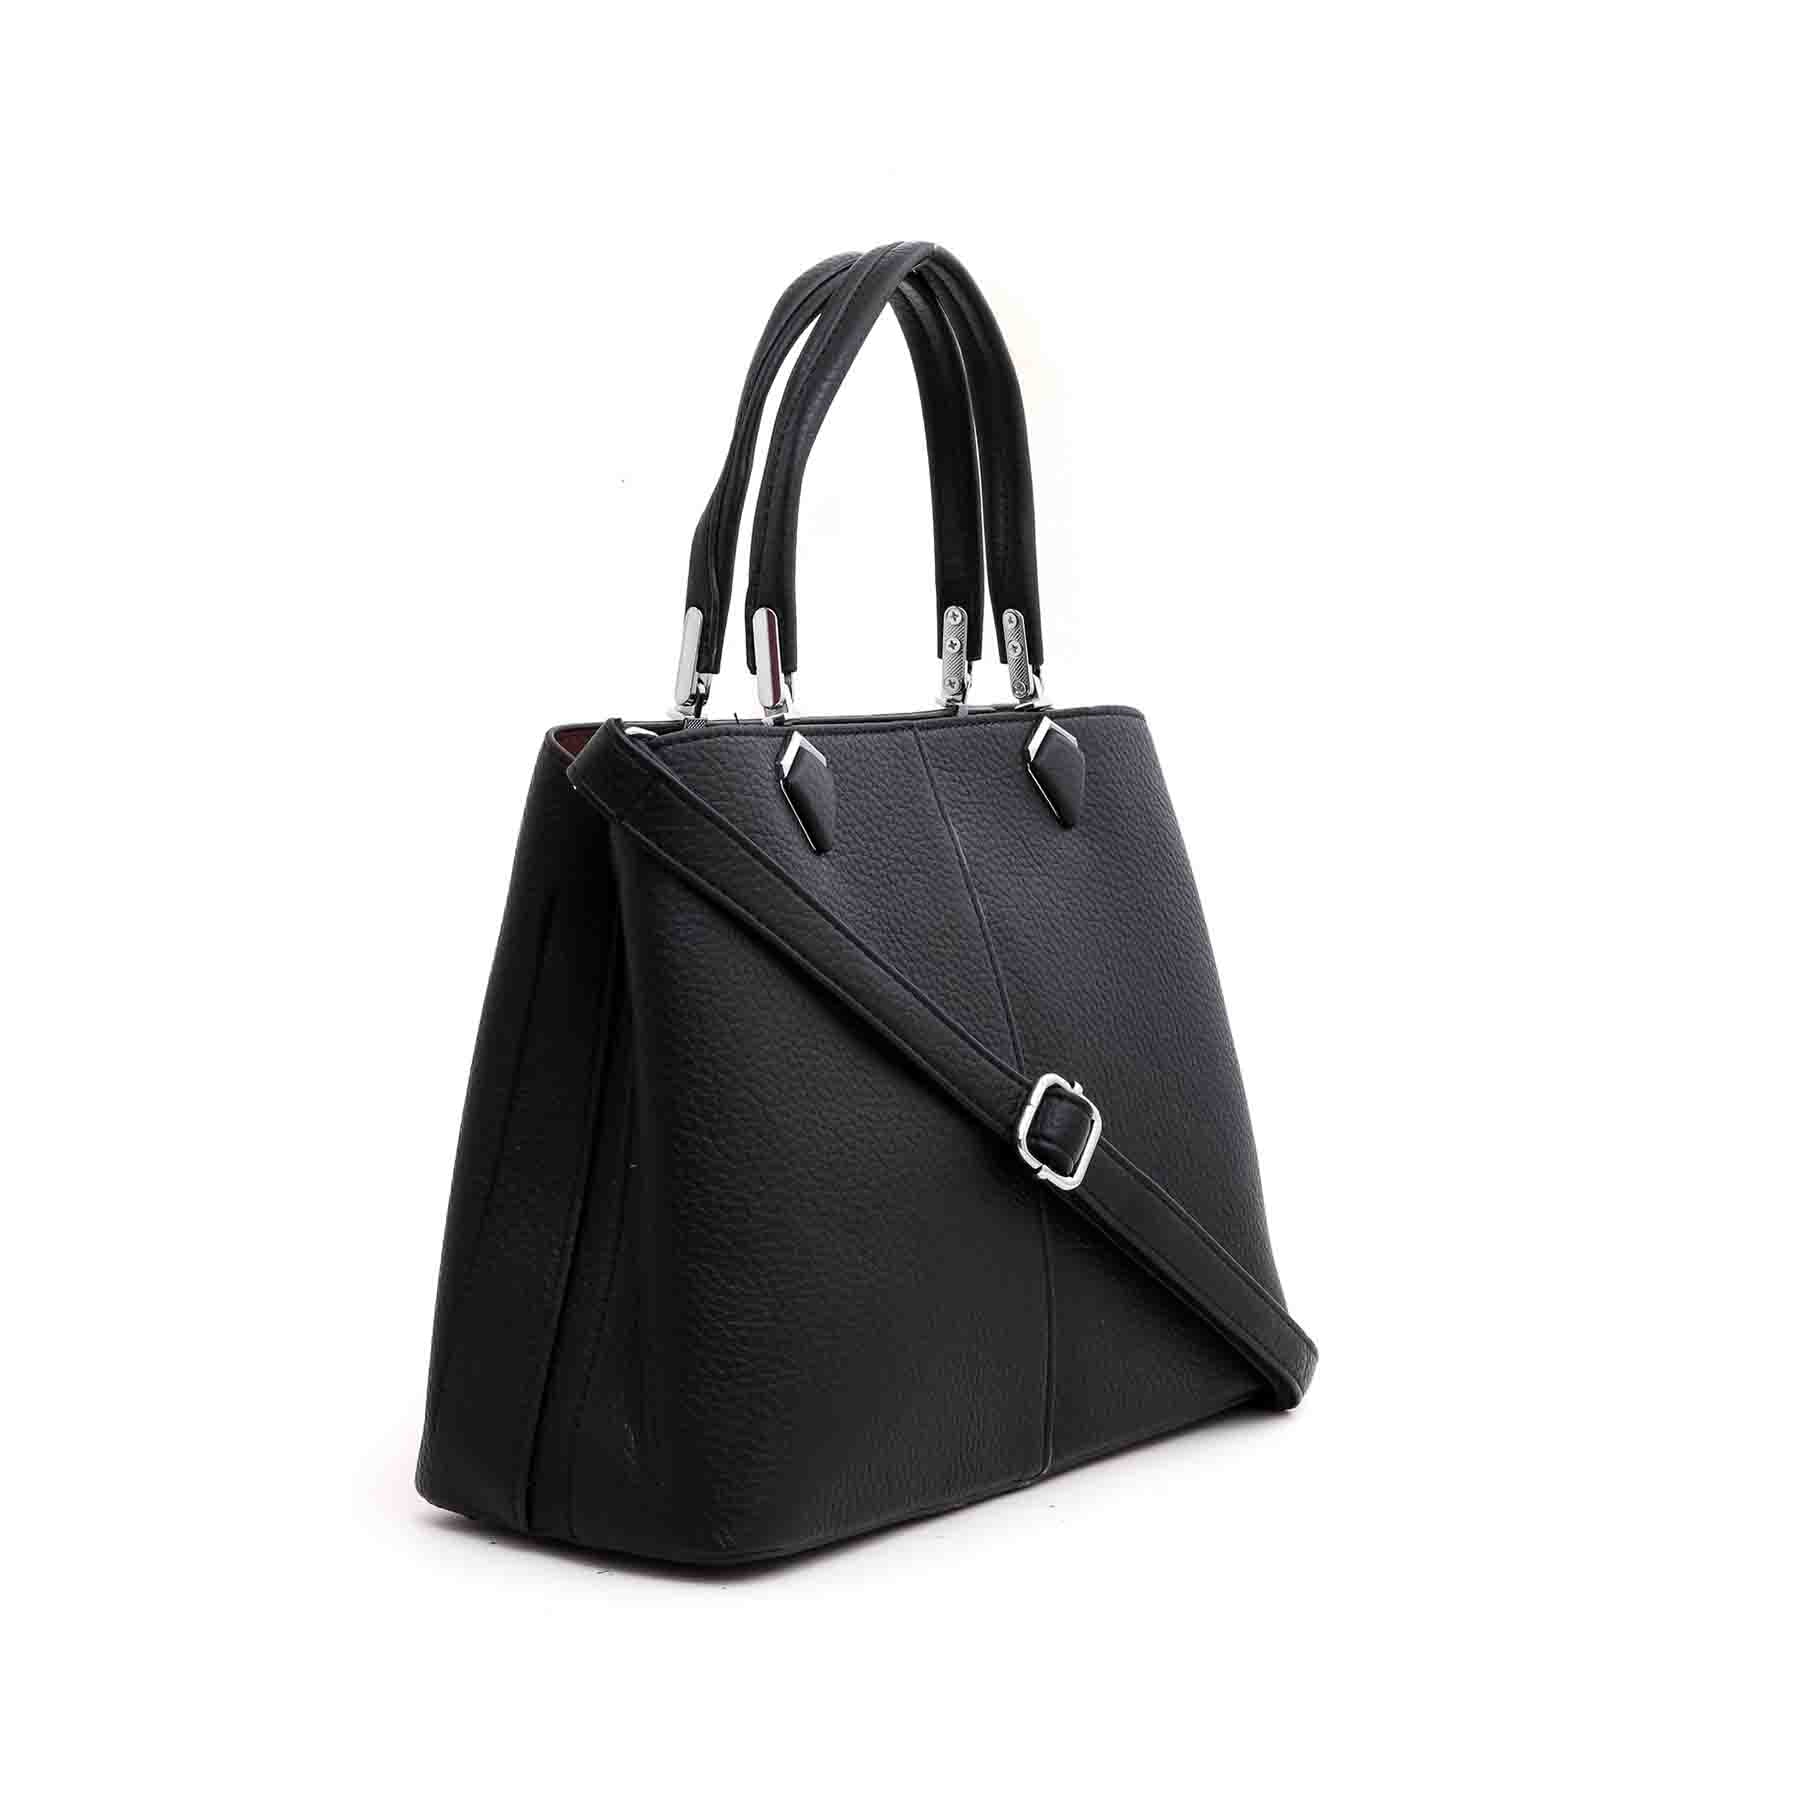 Black Formal Hand Bag P35969